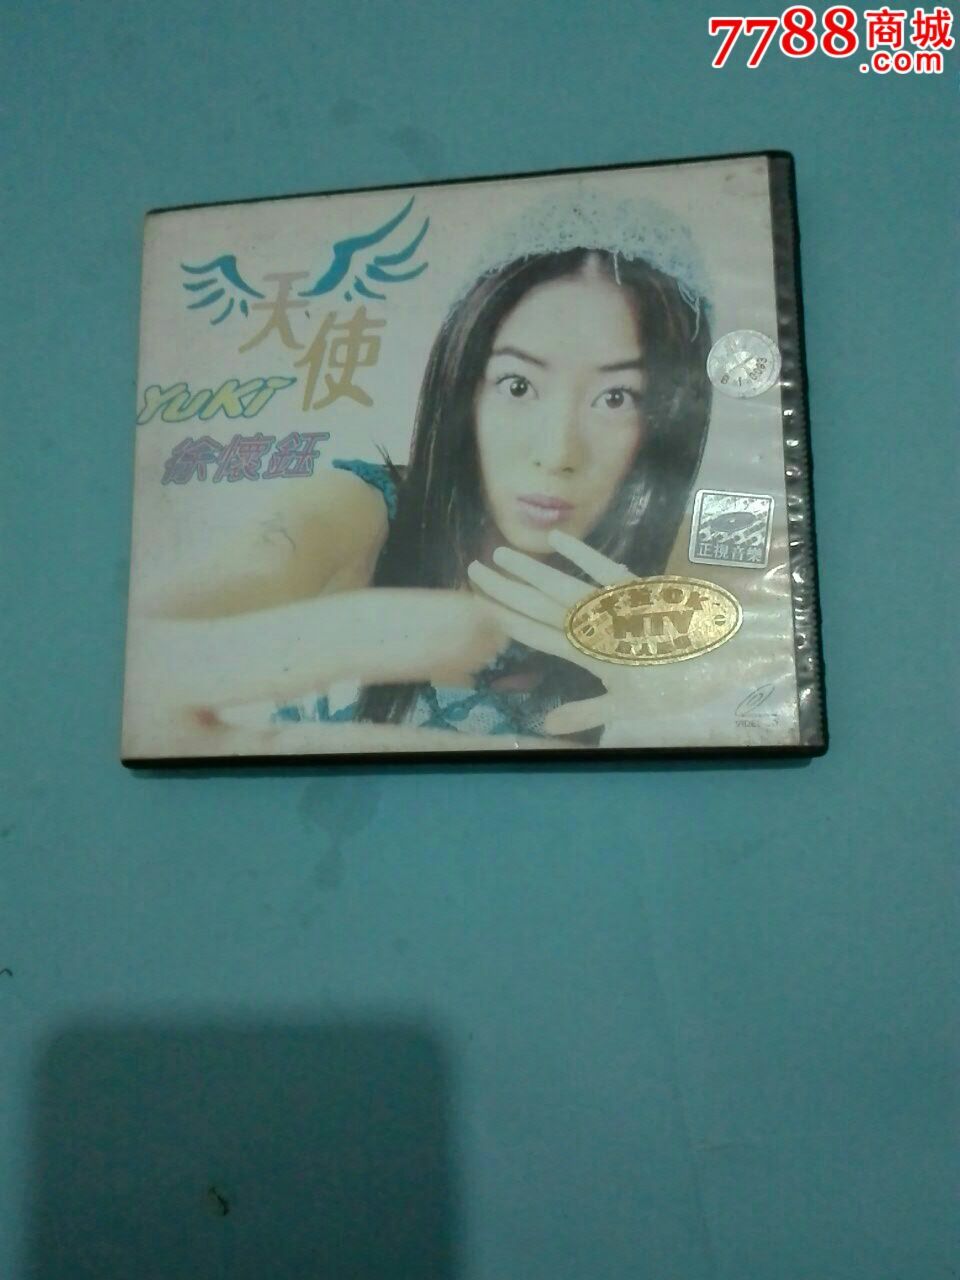 全网唯一,天使徐怀钰1999年台湾滚石版-价格: